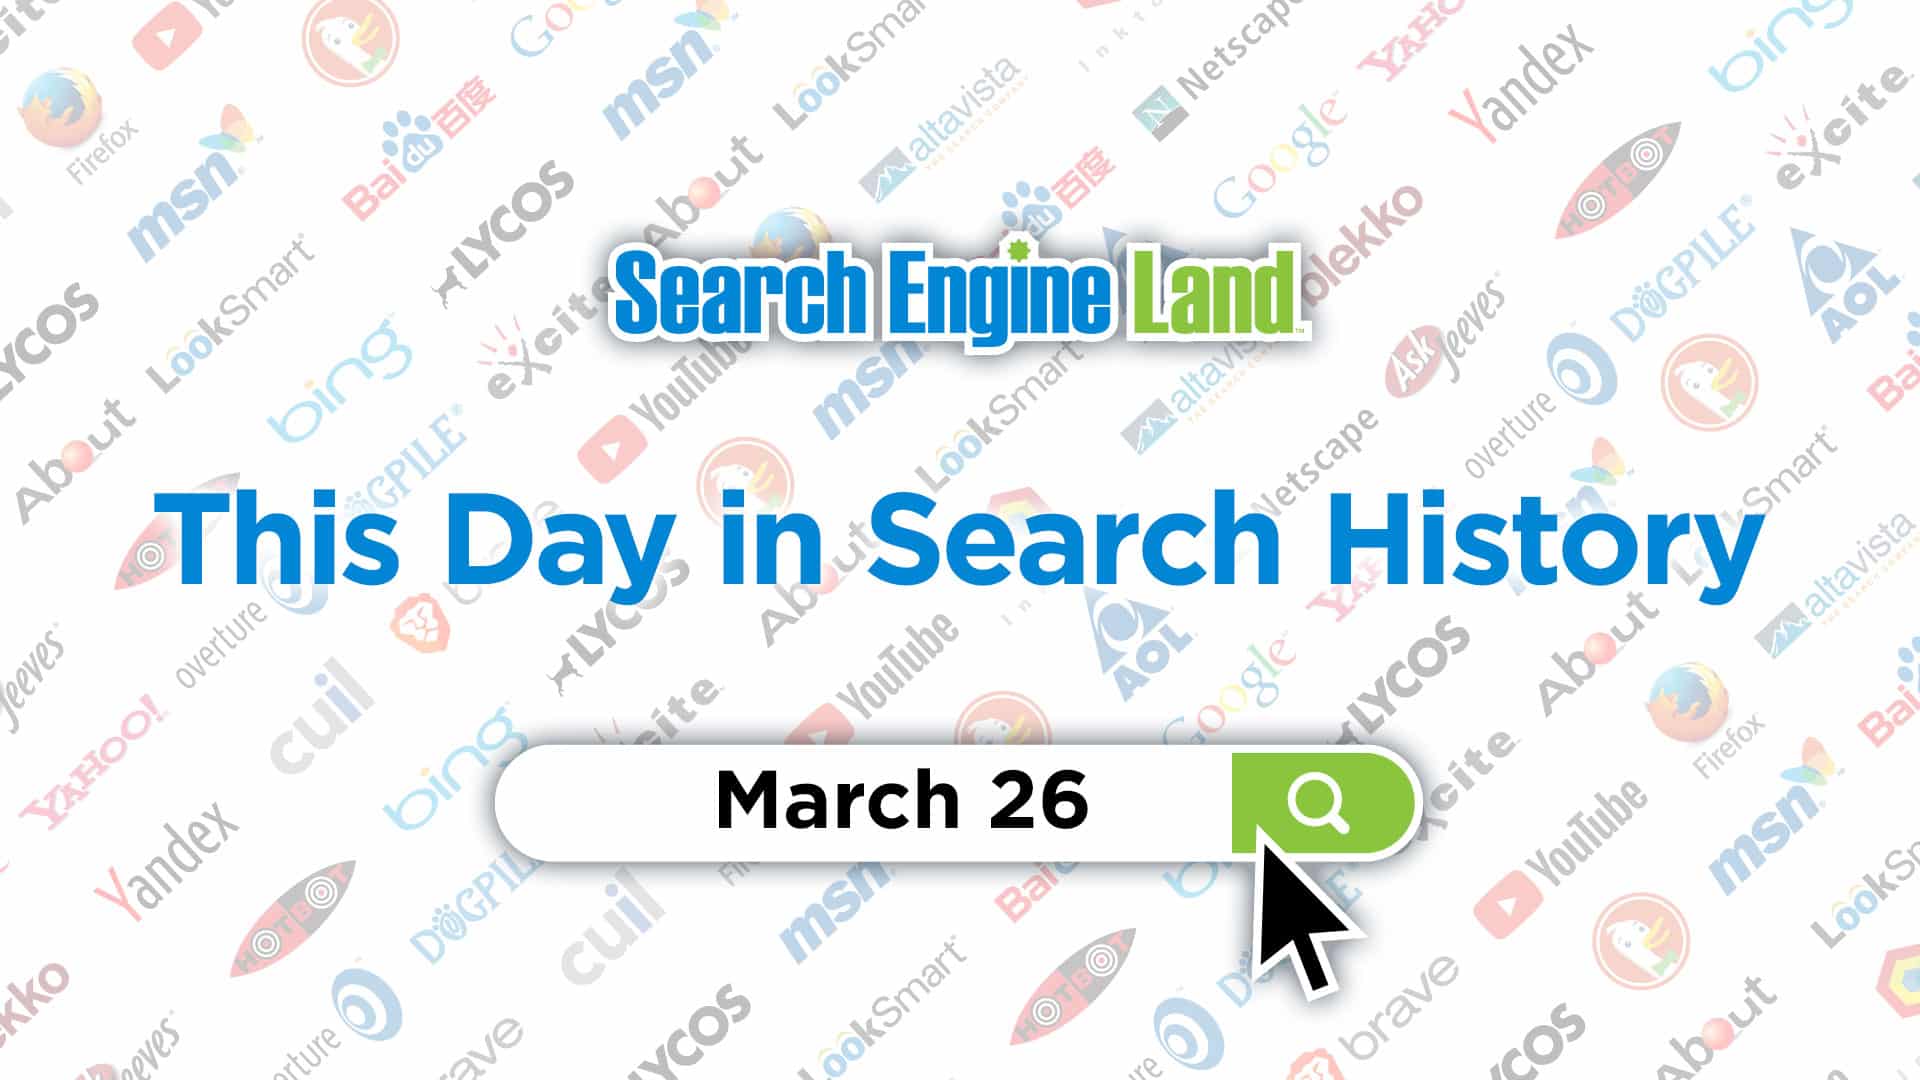 این روز در تاریخچه بازاریابی جستجو: 26 مارس, محتوا مارکتینگ